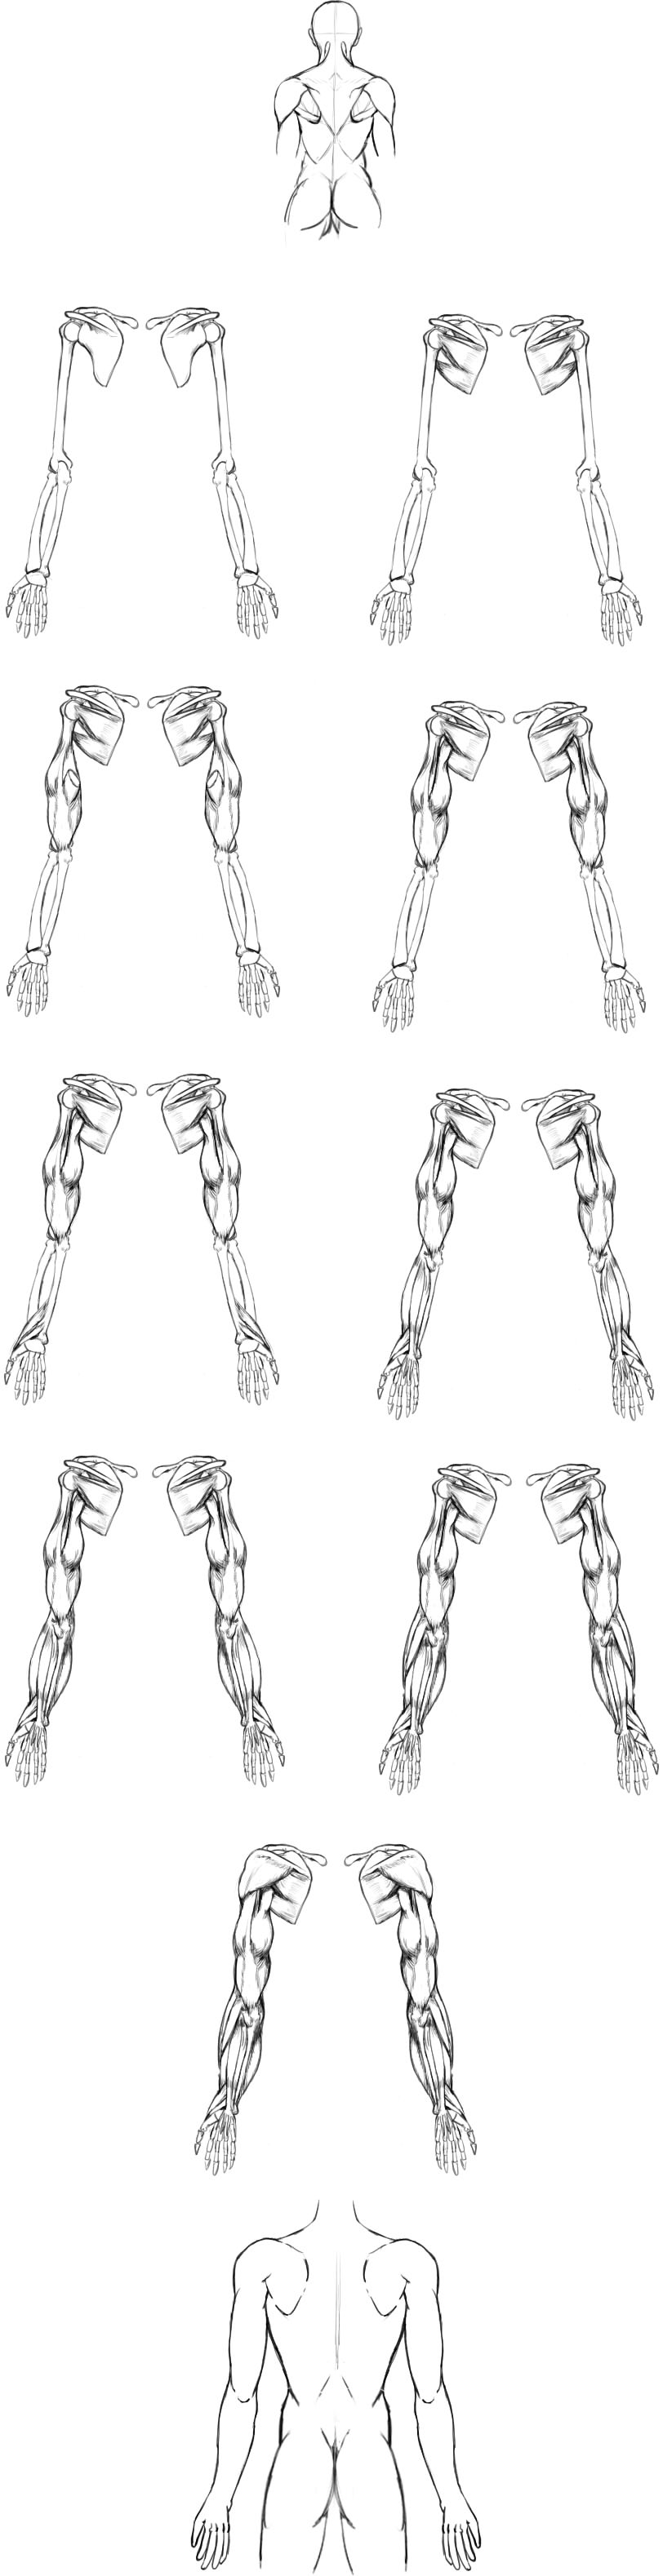 腕の筋肉説明11